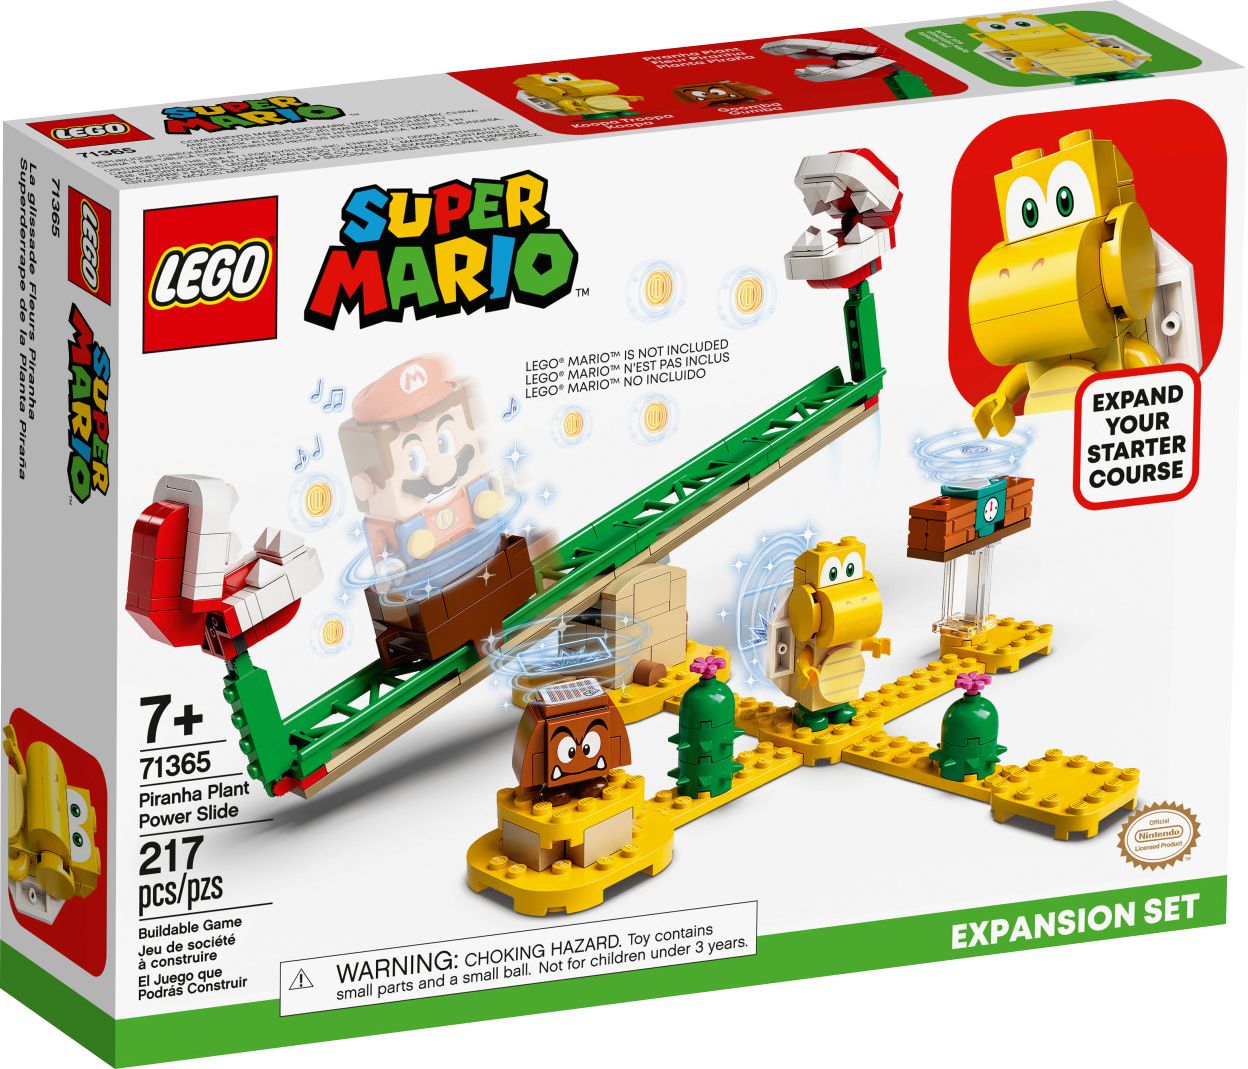 Lego's Newest Super Mario Set Is This 'Menacing' Piranha Plant - CNET